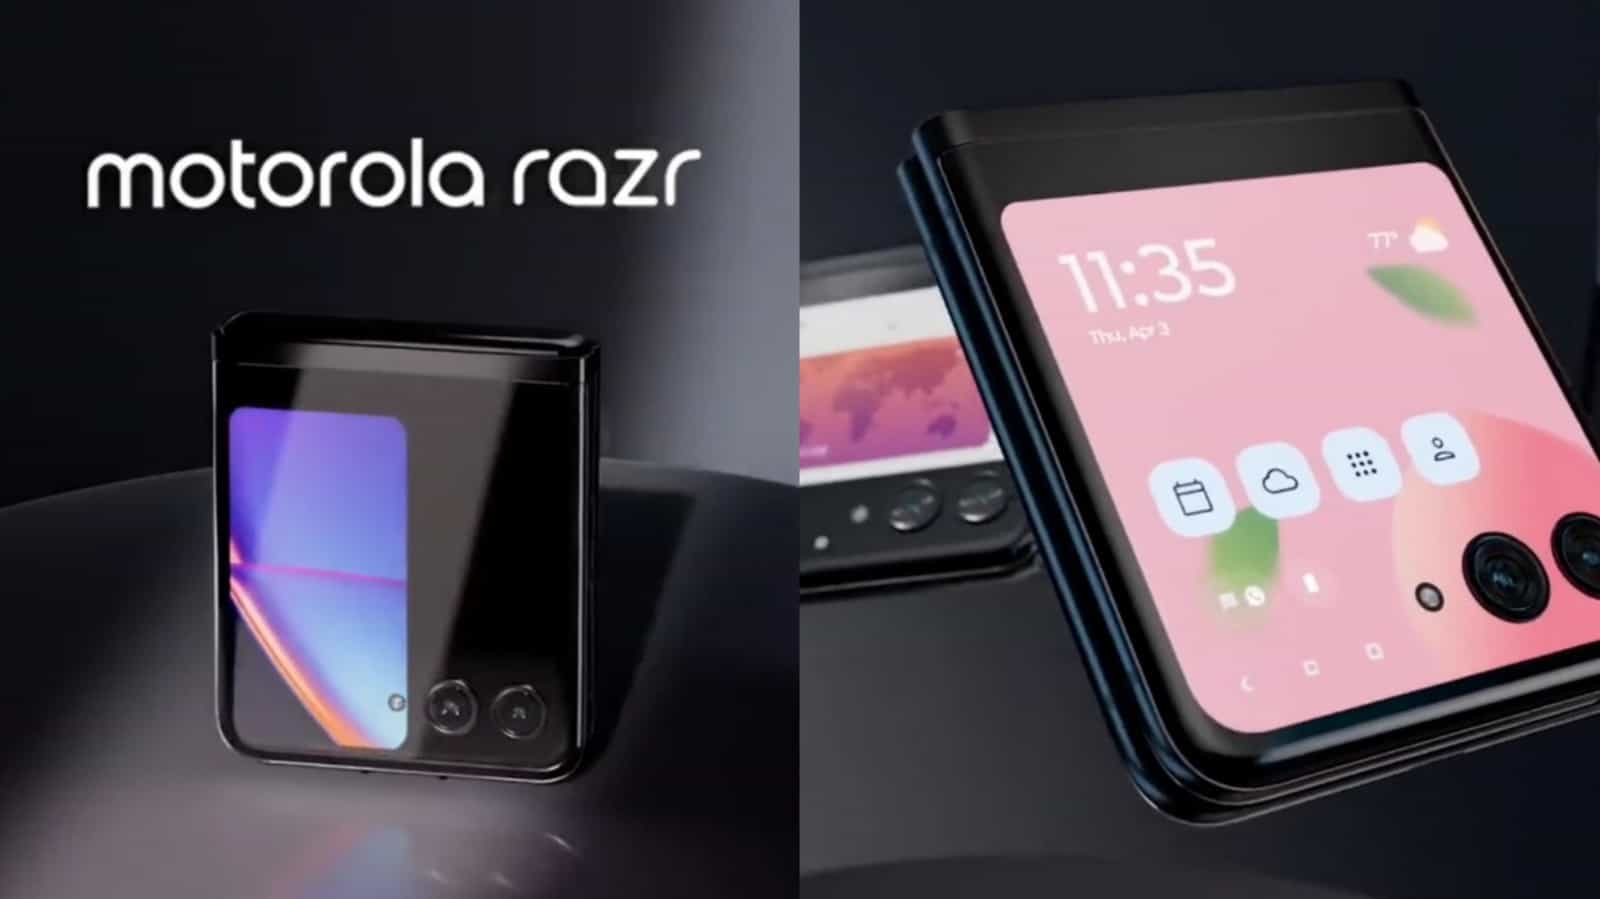 Preise, Farben und Speichervarianten des Motorola Razr 50 werden angezeigt